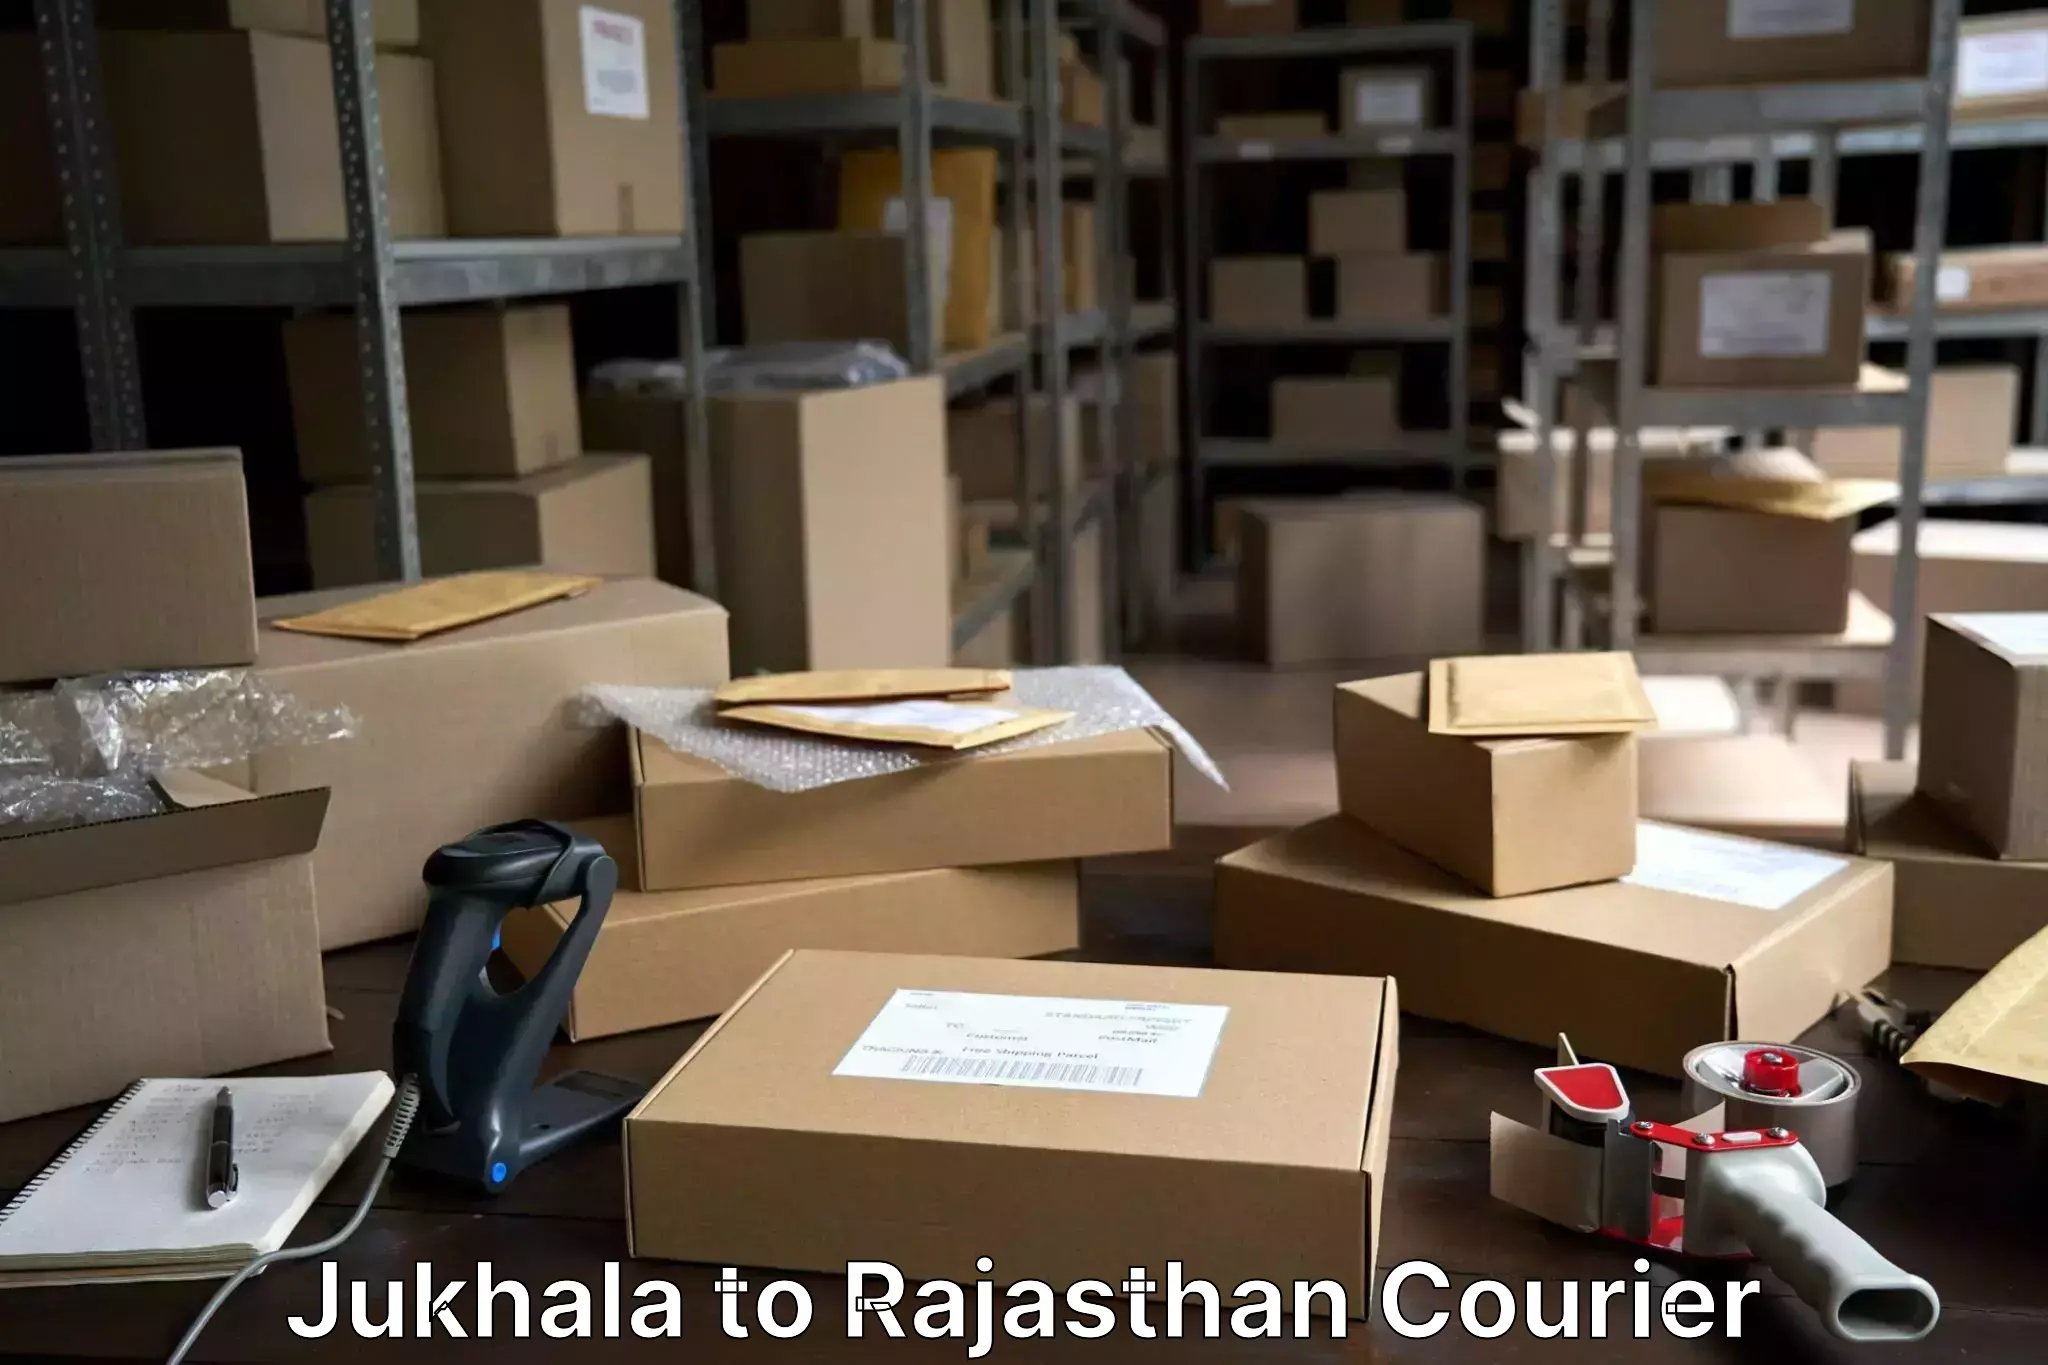 Luggage delivery system Jukhala to Khinwara